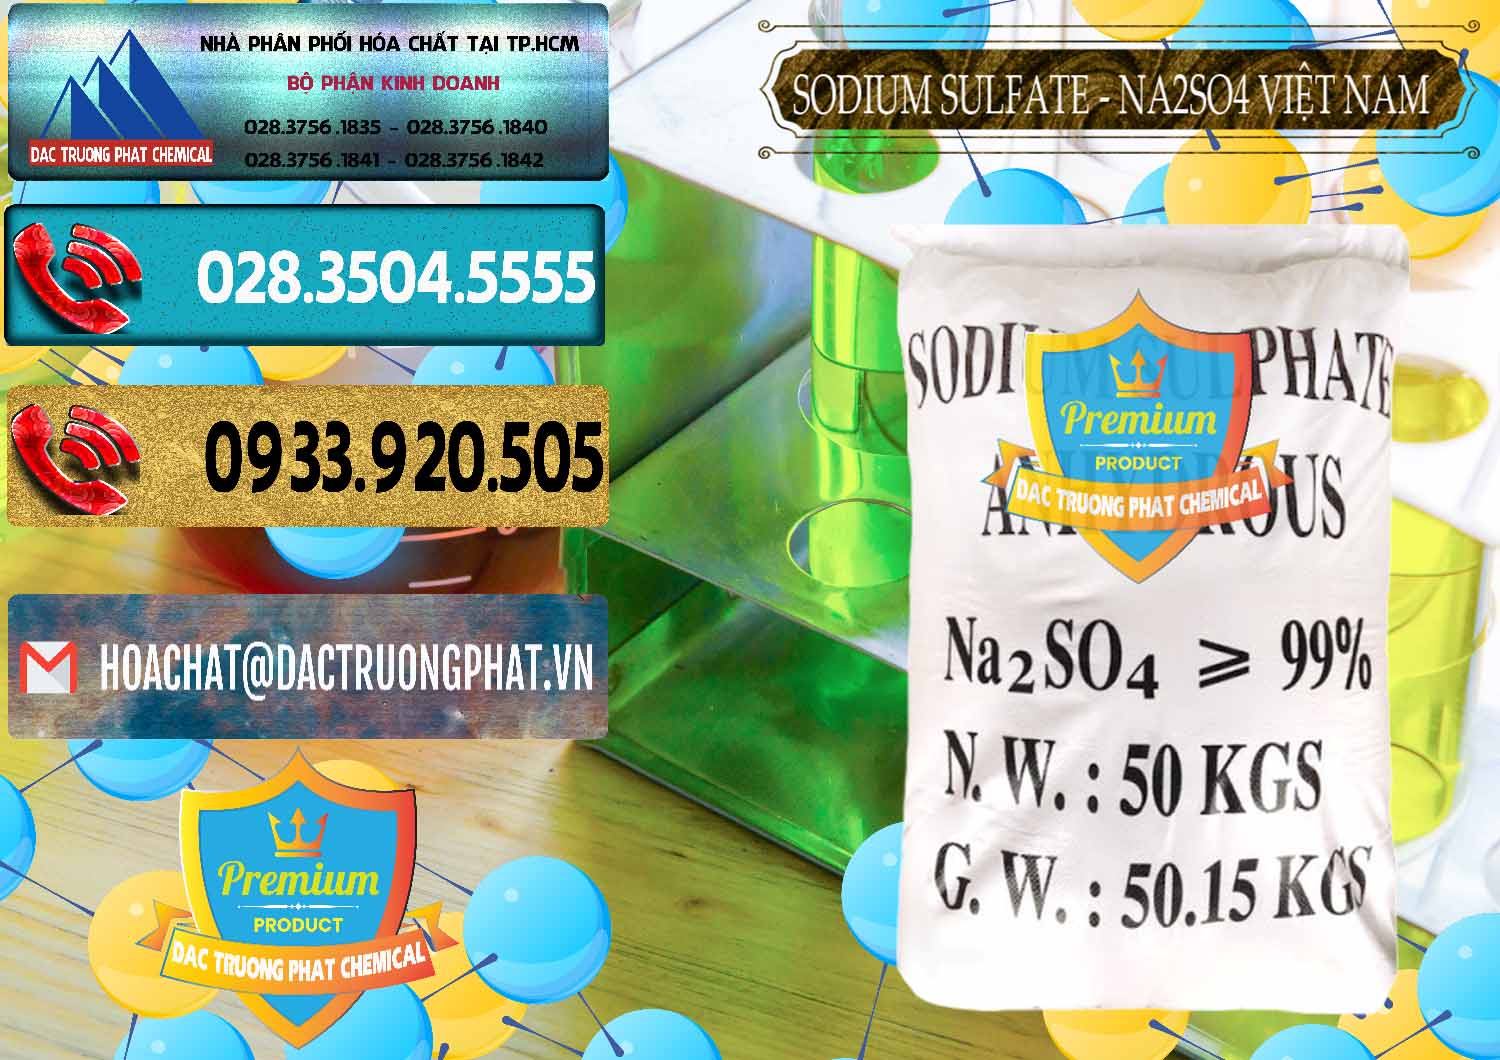 Phân phối - cung cấp Sodium Sulphate - Muối Sunfat Na2SO4 Việt Nam - 0355 - Nơi phân phối & cung cấp hóa chất tại TP.HCM - hoachatdetnhuom.com